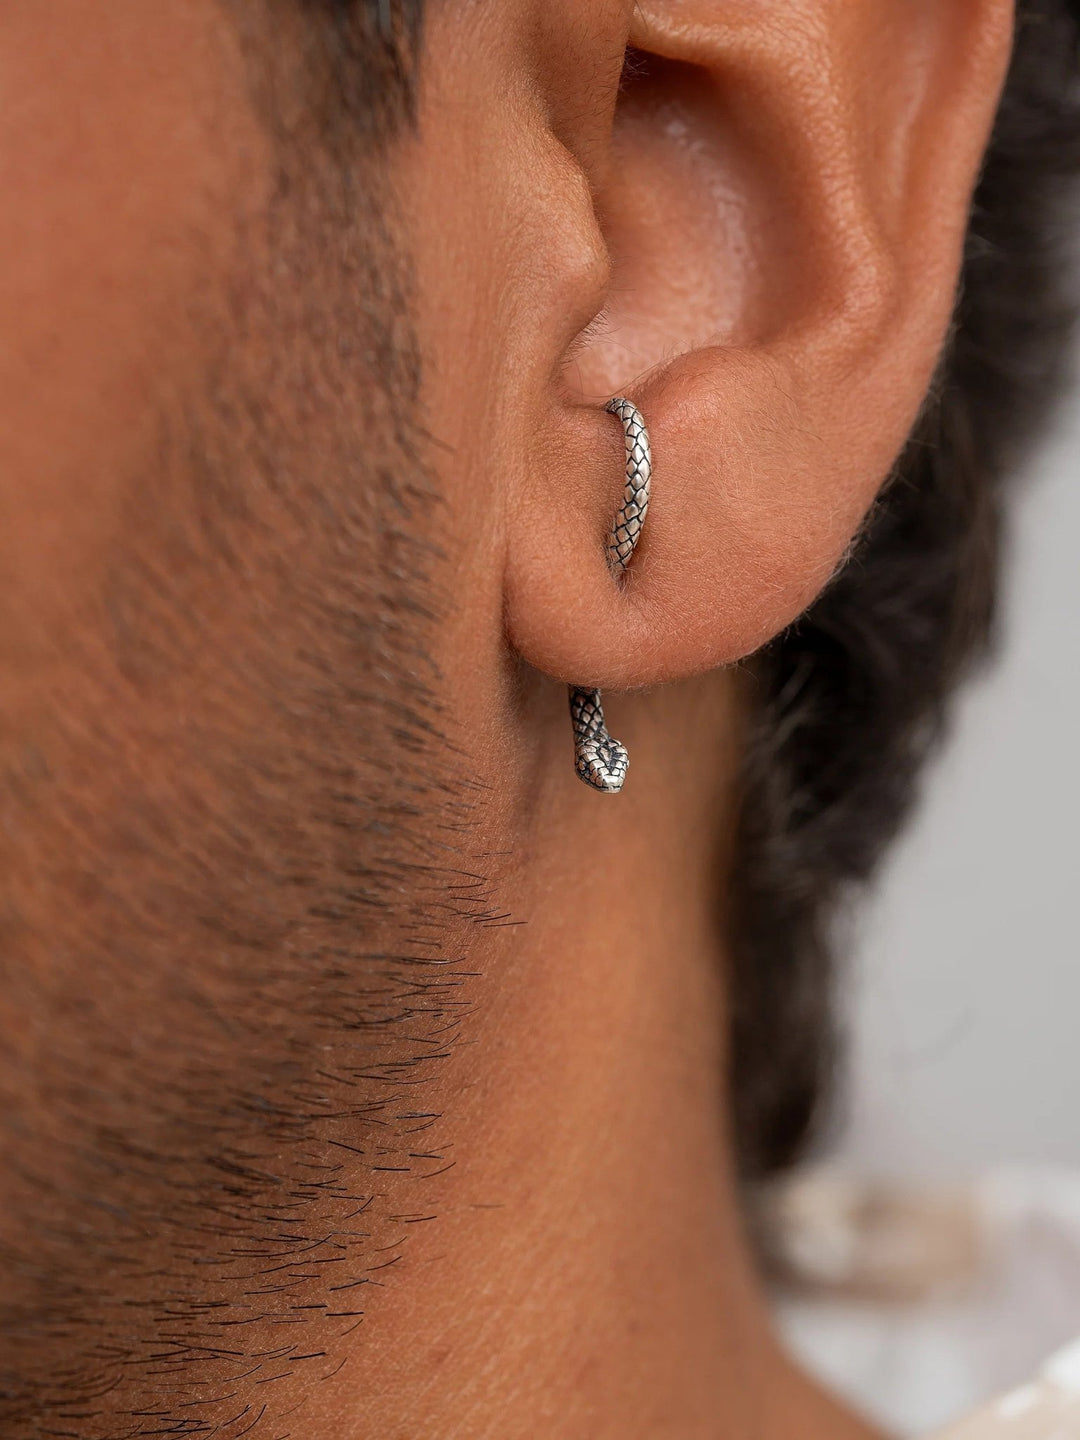 Unax Men's Earring Snake - Single925 Silver OxideAnimal Earringsdainty earringsLunai Jewelry